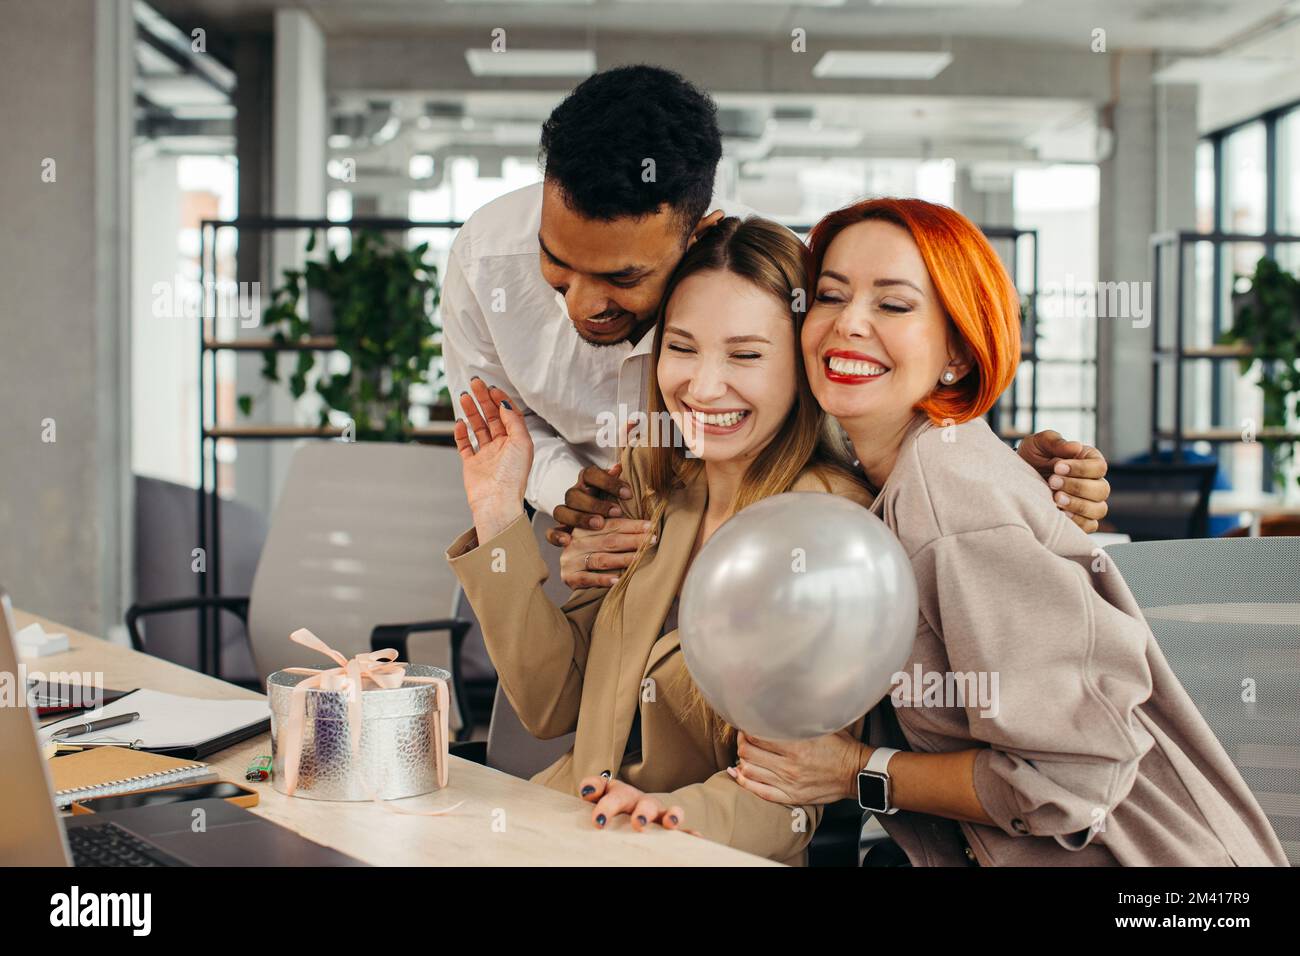 Das Business-Team feiert den Geburtstag eines Kollegen mit einem Kuchen im Büro. Den Geburtstag eines Mitarbeiters am Arbeitsplatz feiern. Stockfoto